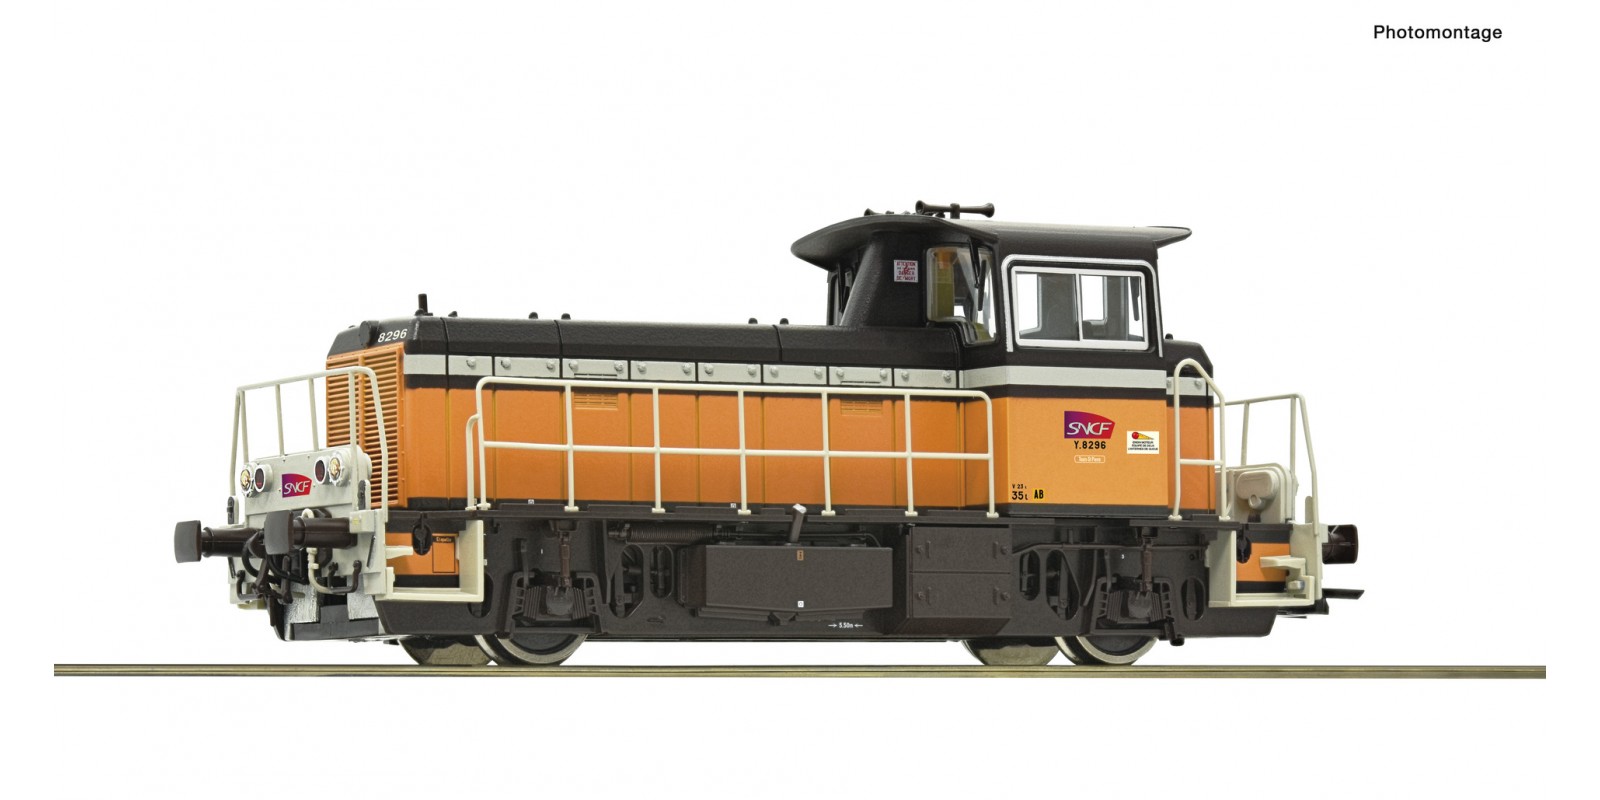 RO72010 Diesel locomotive Y 8296, SNCF